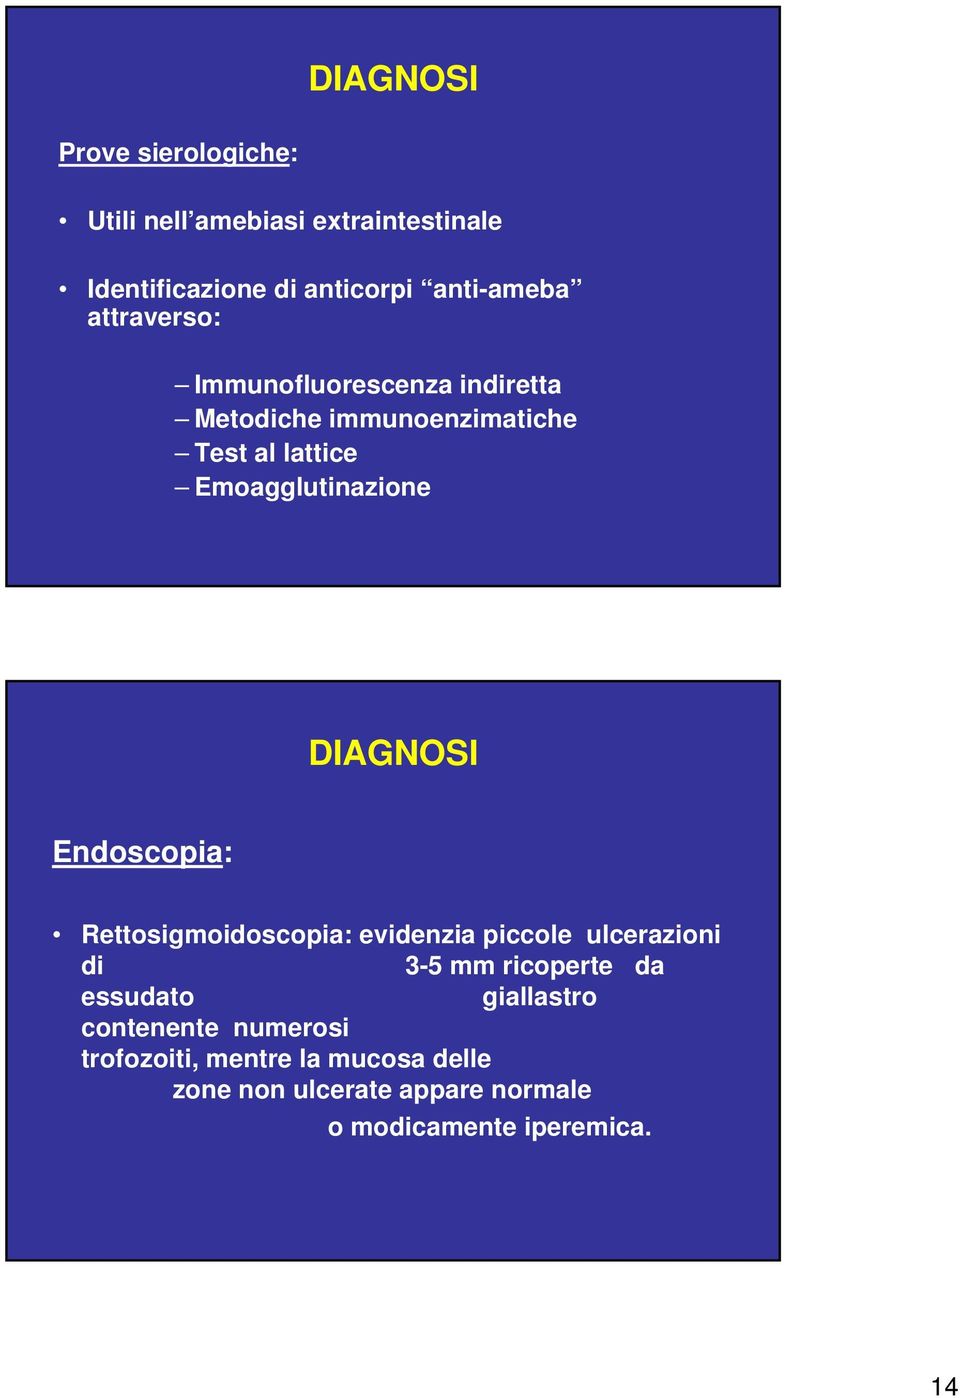 DIAGNOSI Endoscopia: Rettosigmoidoscopia: evidenzia piccole ulcerazioni di 3-5 mm ricoperte da essudato